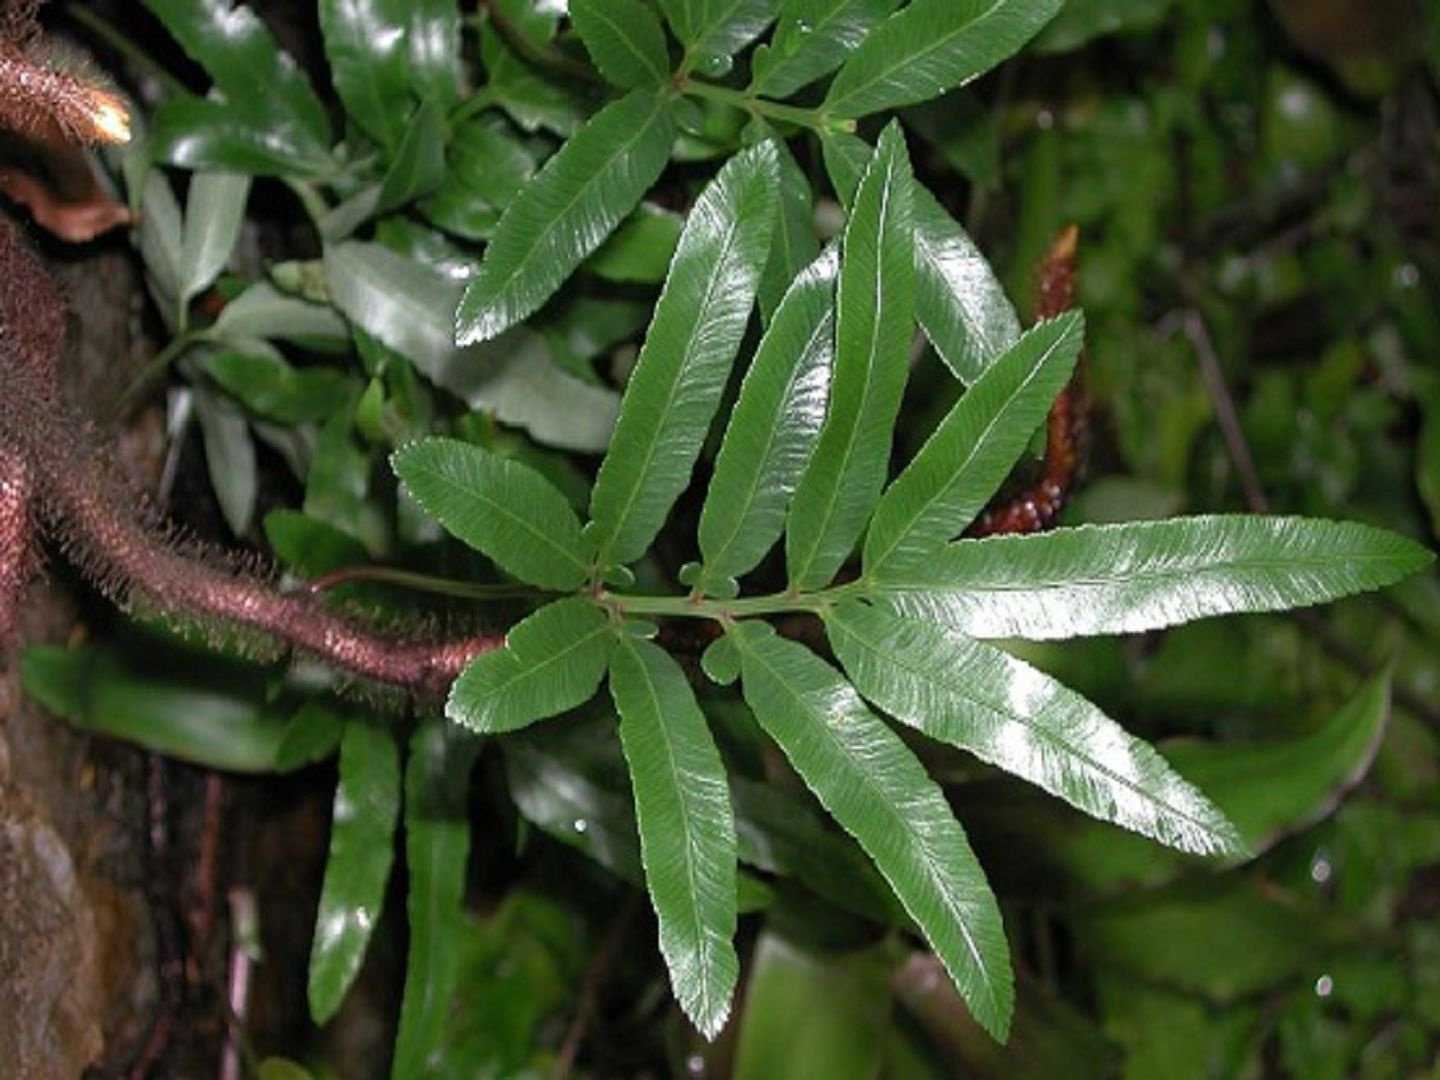 Кустарник даваллия (Davallia) — это многолетник, который относится к папоротниковым растениям Он отличается быстрым ростом и является представителем семейства Даваллиевых